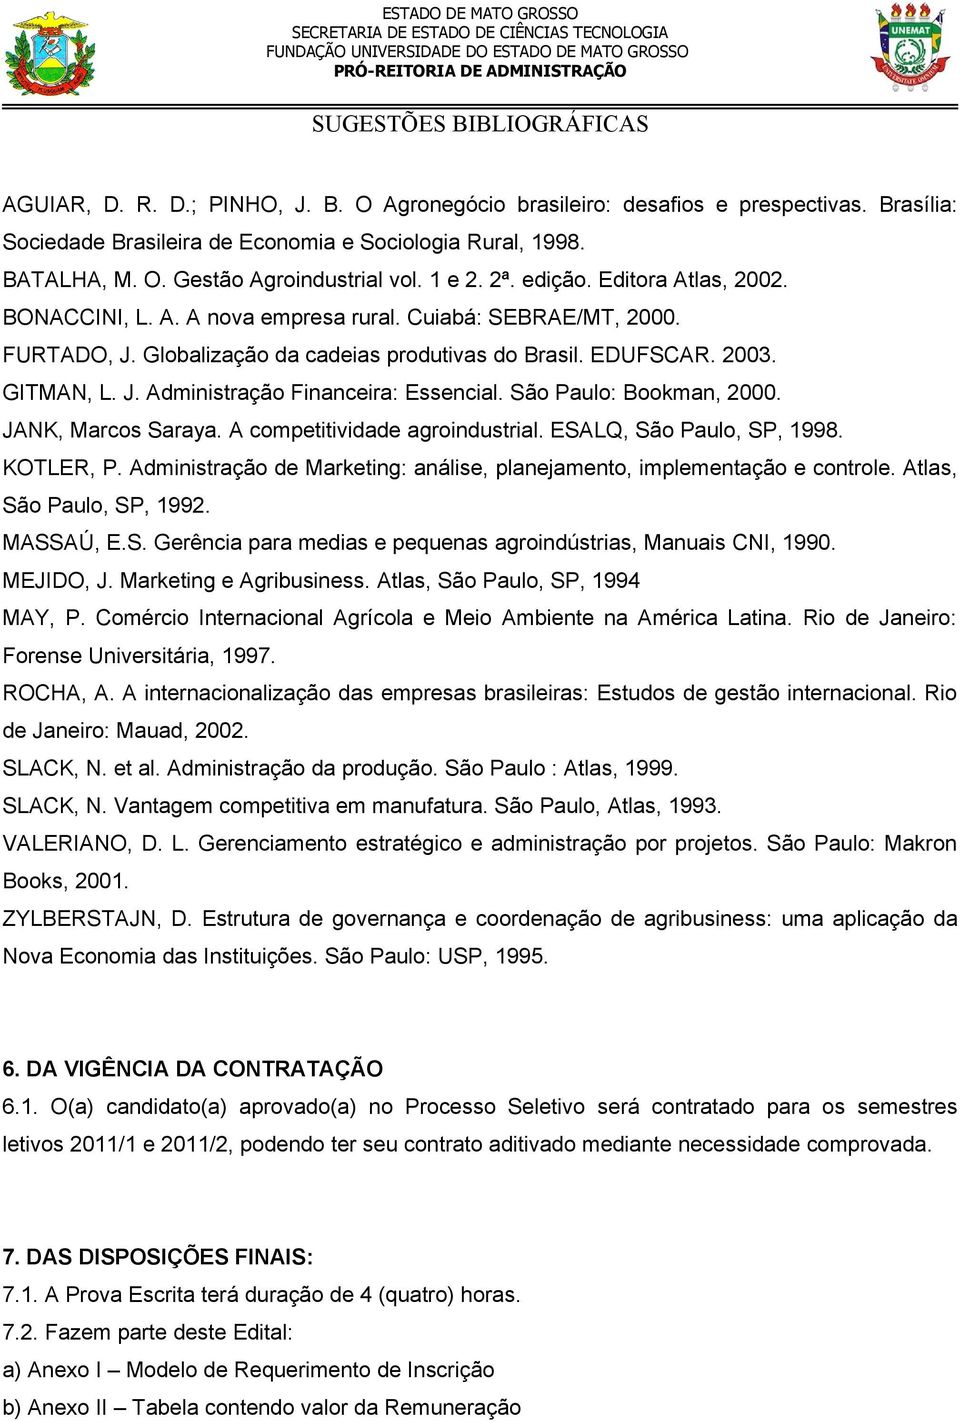 São Paulo: Bookman, 2000. JANK, Marcos Saraya. A competitividade agroindustrial. ESALQ, São Paulo, SP, 1998. KOTLER, P. Administração de Marketing: análise, planejamento, implementação e controle.